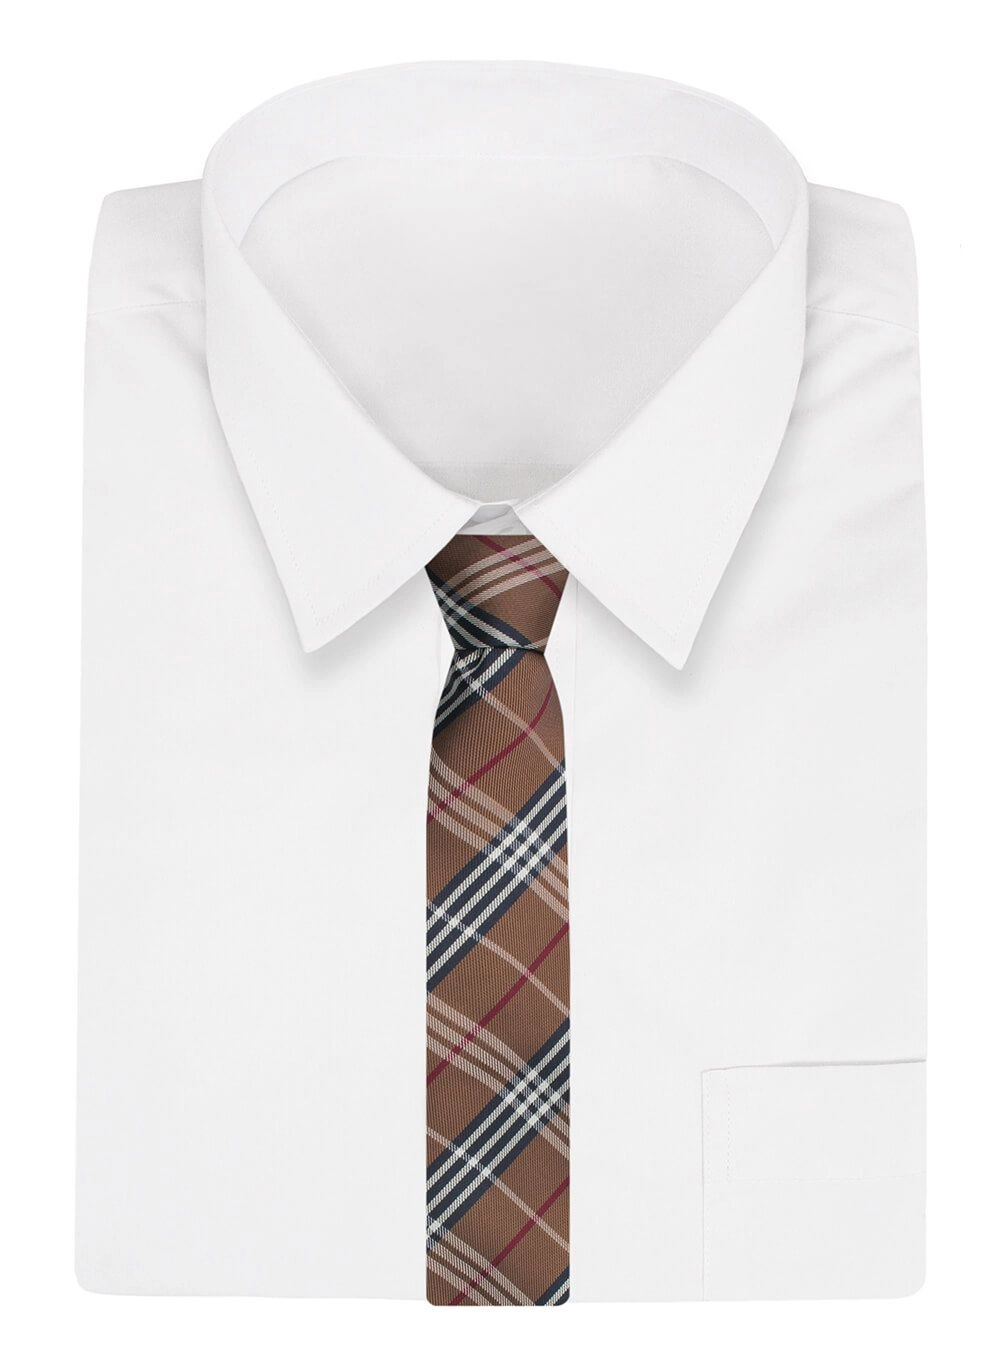 Krawat Alties (7 cm) - Brązowy w Kratę